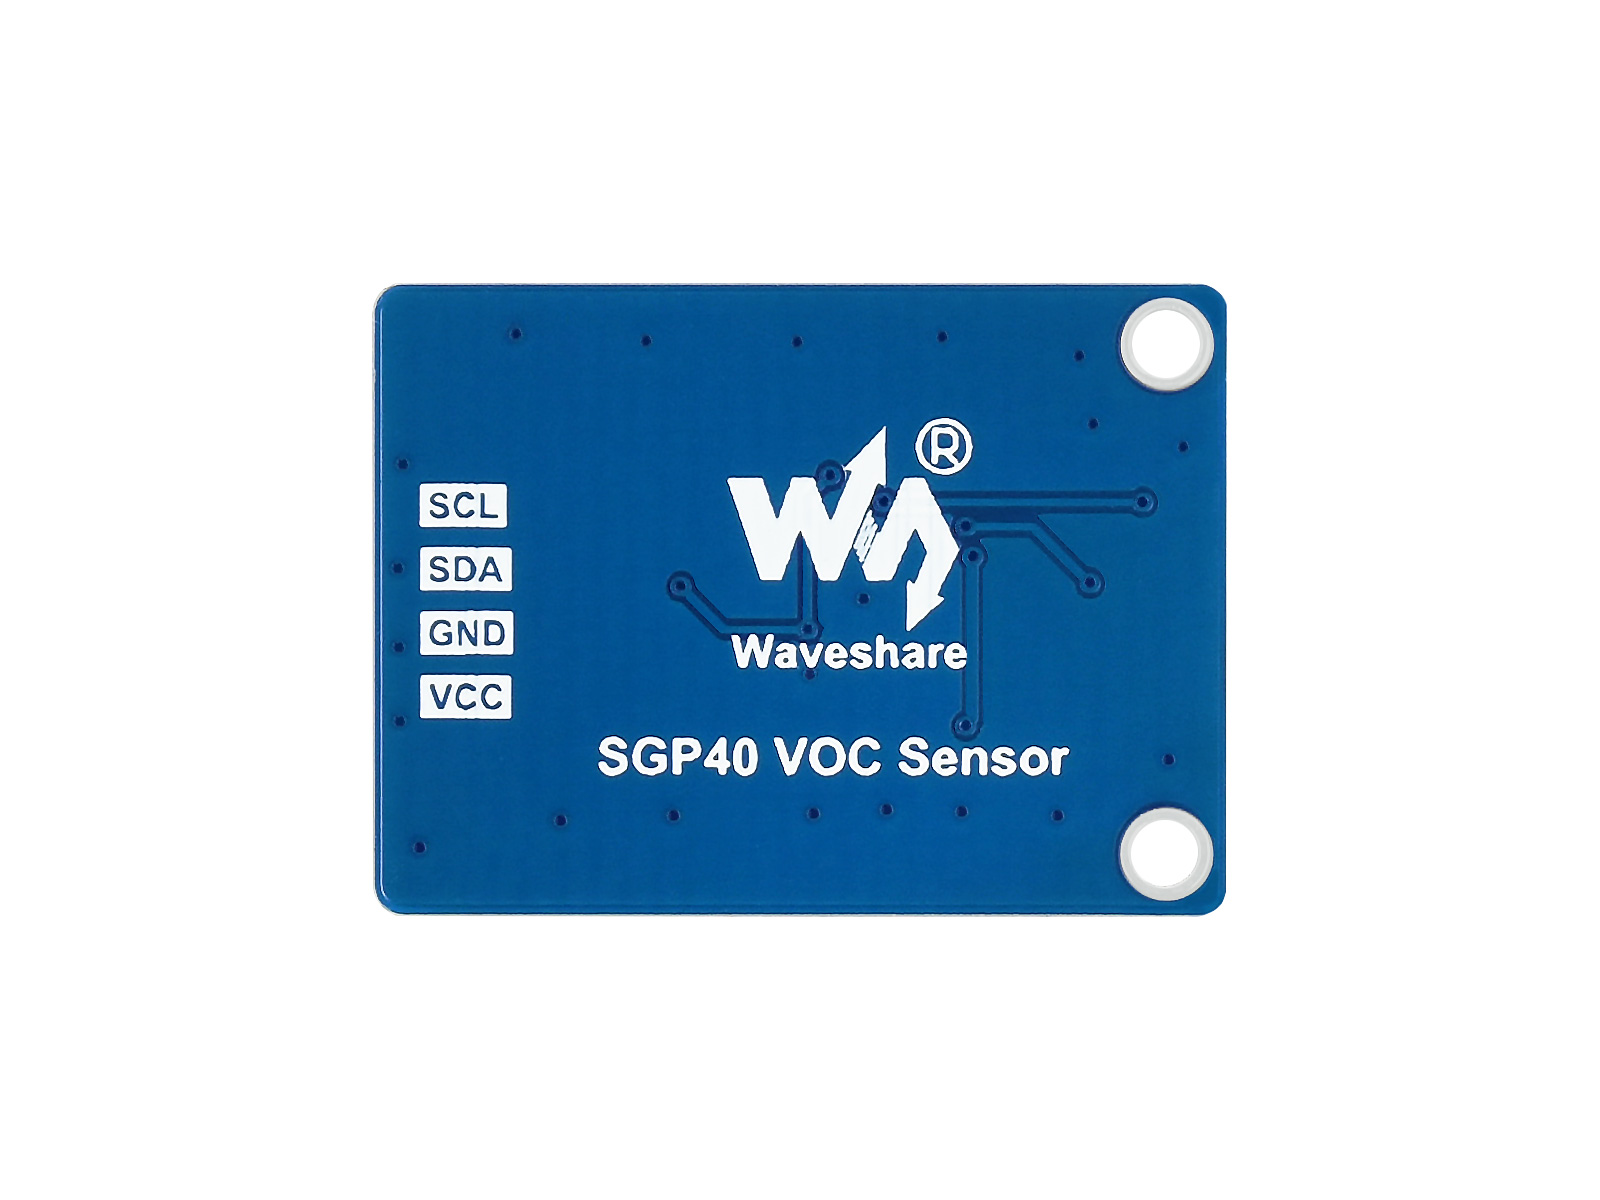 Digital SGP40 VOC (Volatile Organic Compounds) Gas Sensor, I2C Bus